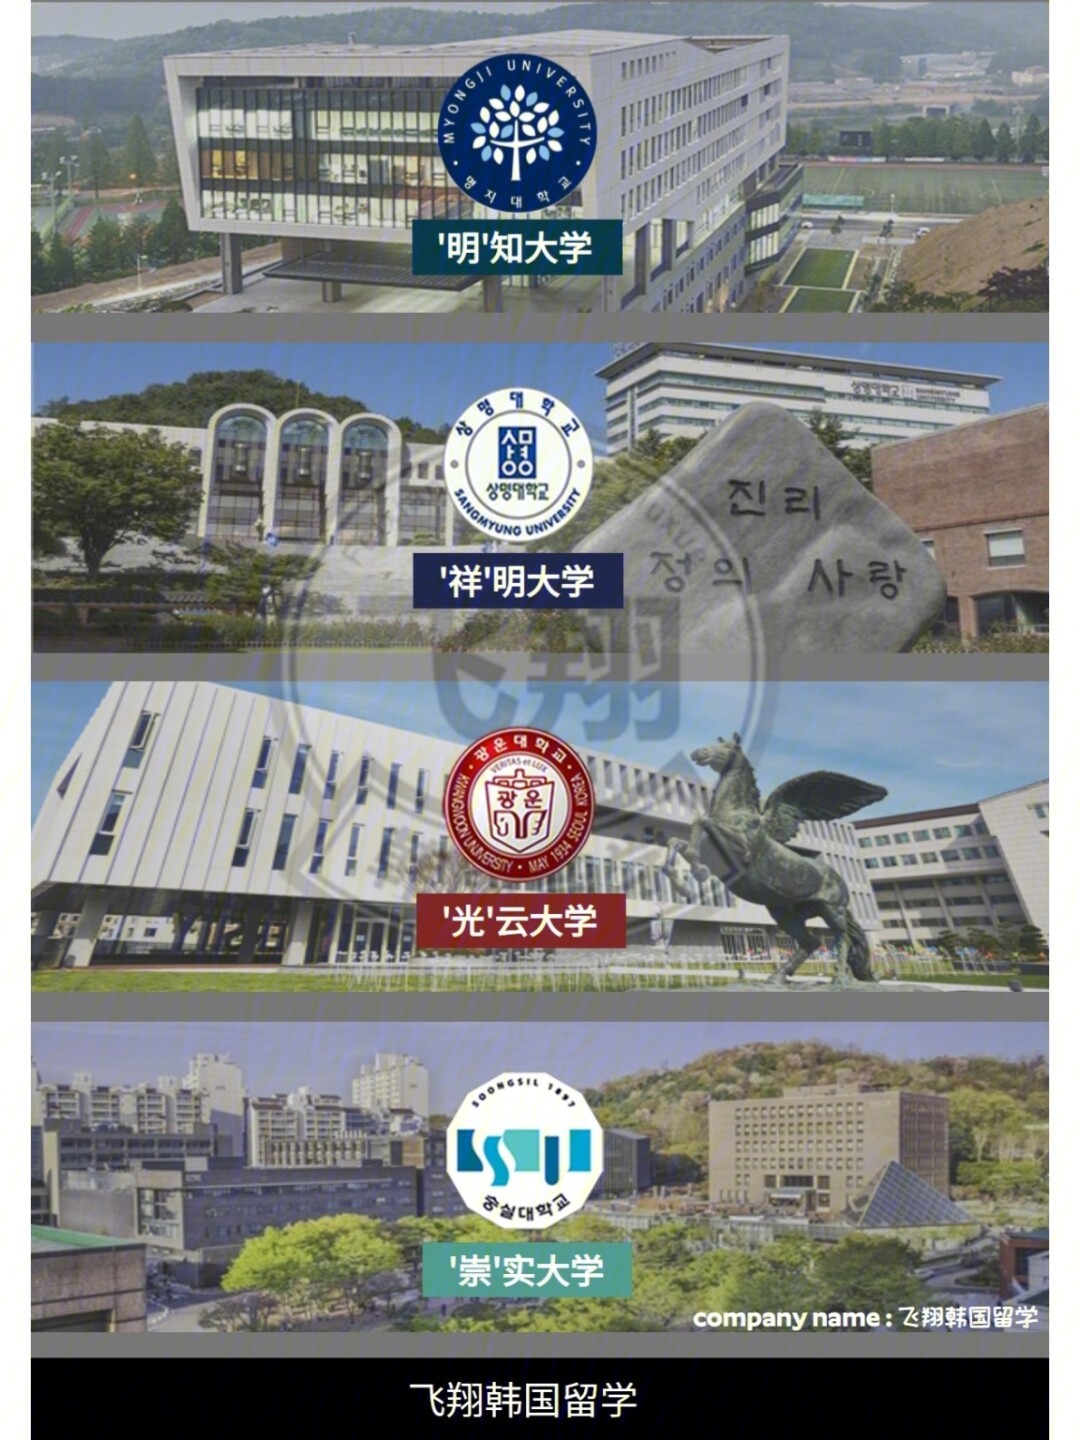 明知大学,祥明大学,光云大学,崇实大学在韩国人眼中是很不错的名牌